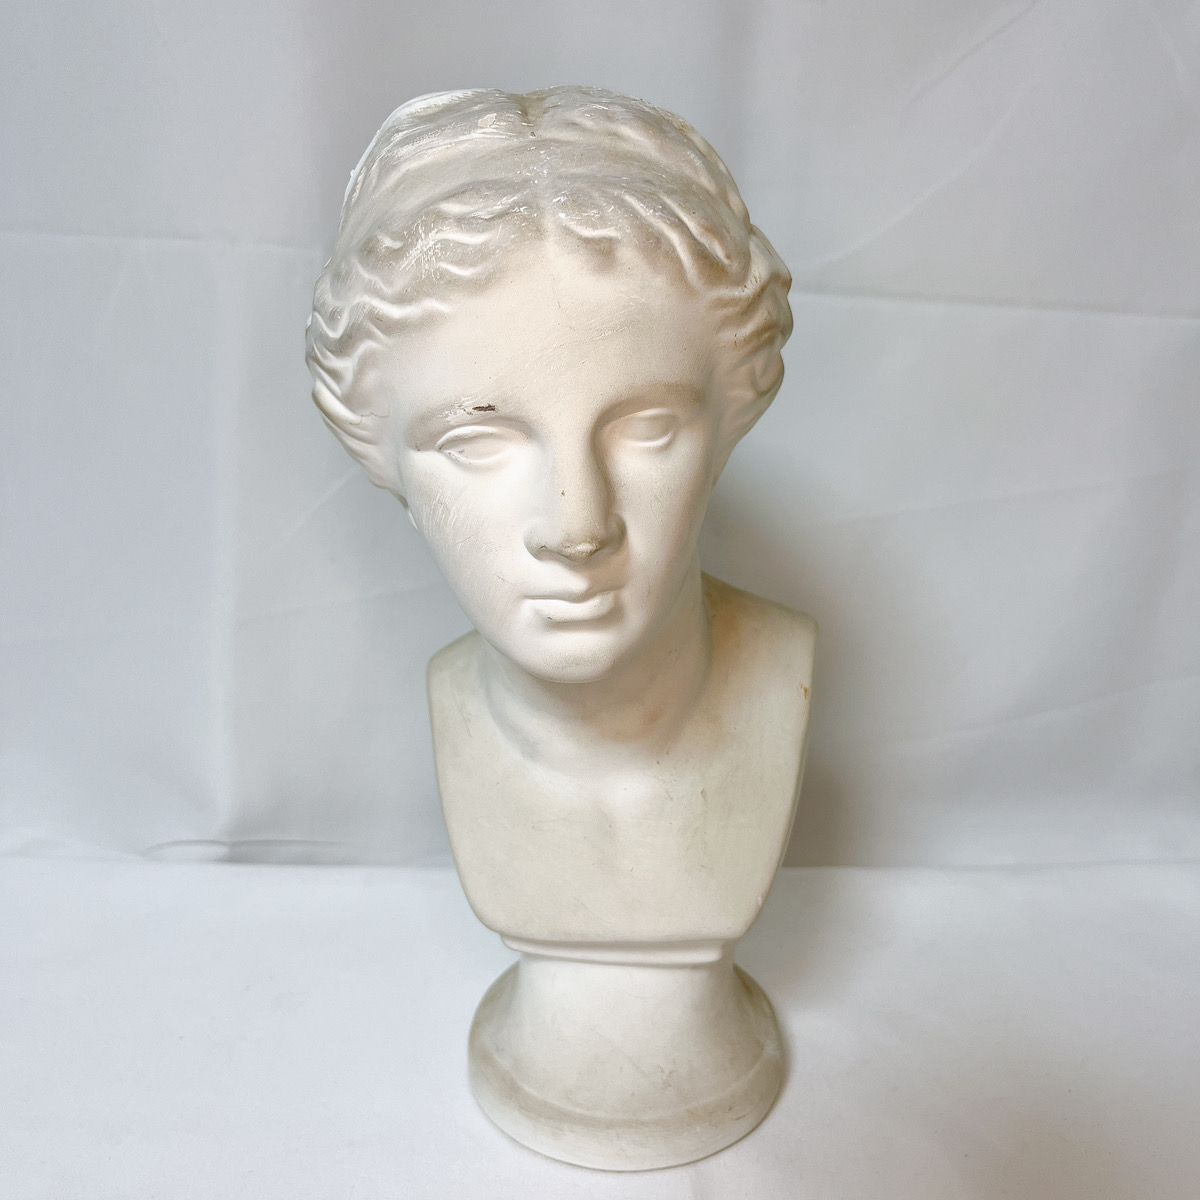 石膏像 「ミロのヴィーナス 」胸像 デッサン 美術 インテリア - 彫刻 